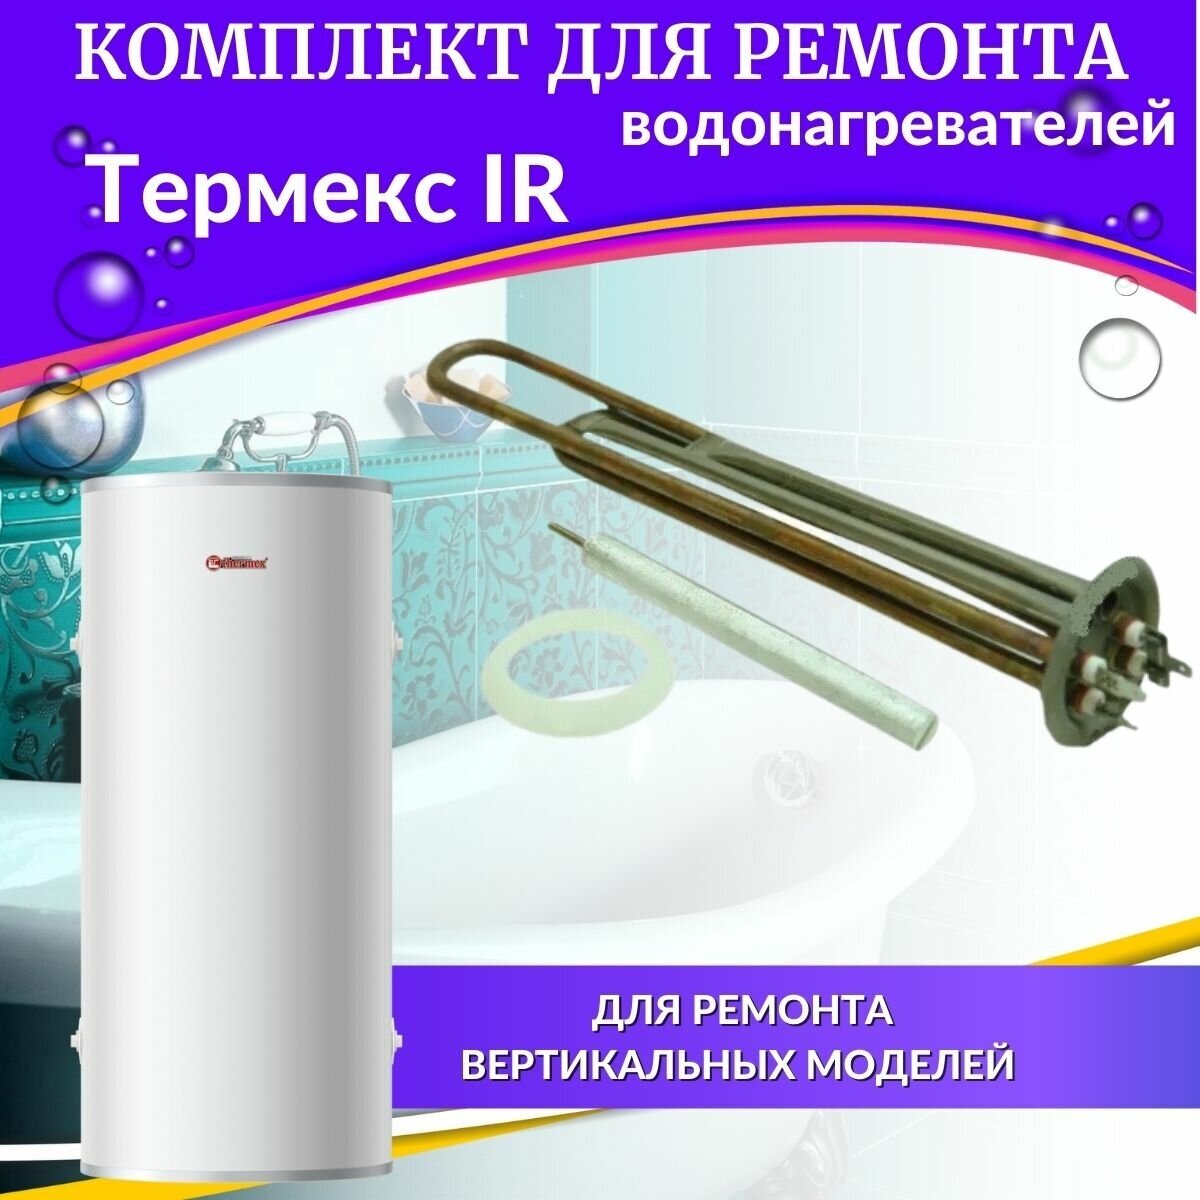 ТЭН 2,0 кВт для Термекс IR 30-150л (медь, комплект с прокладкой и анодом) Россия (TENIR30-150medR)